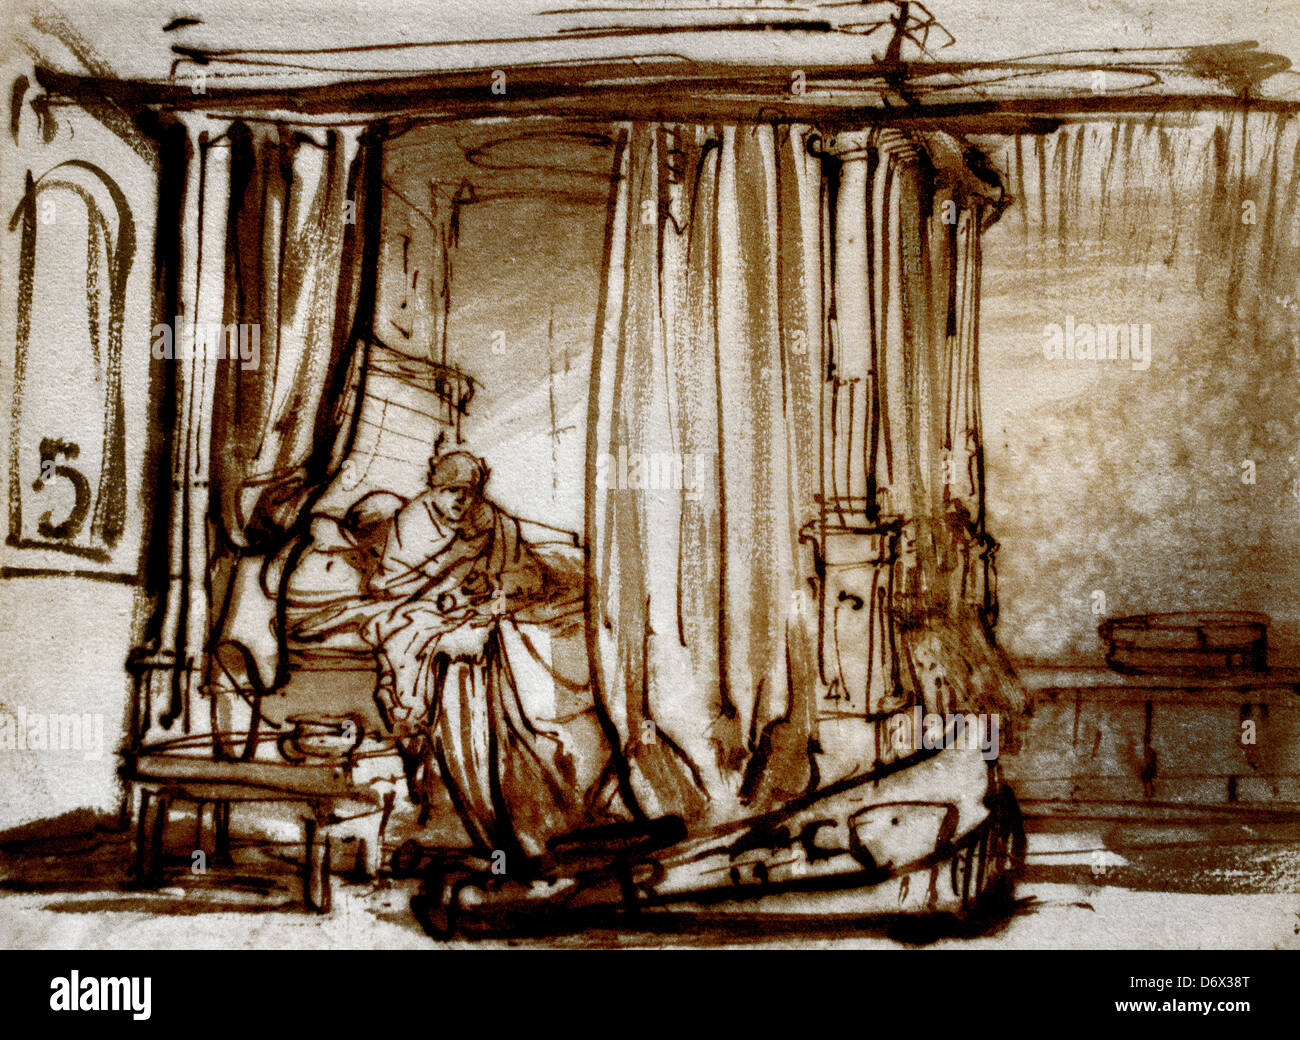 Une femme assise dans un lit à baldaquin 1638 Rembrandt Harmenszoon van Rijn 1606-1669 Néerlandais Pays-Bas pen encre marron Banque D'Images